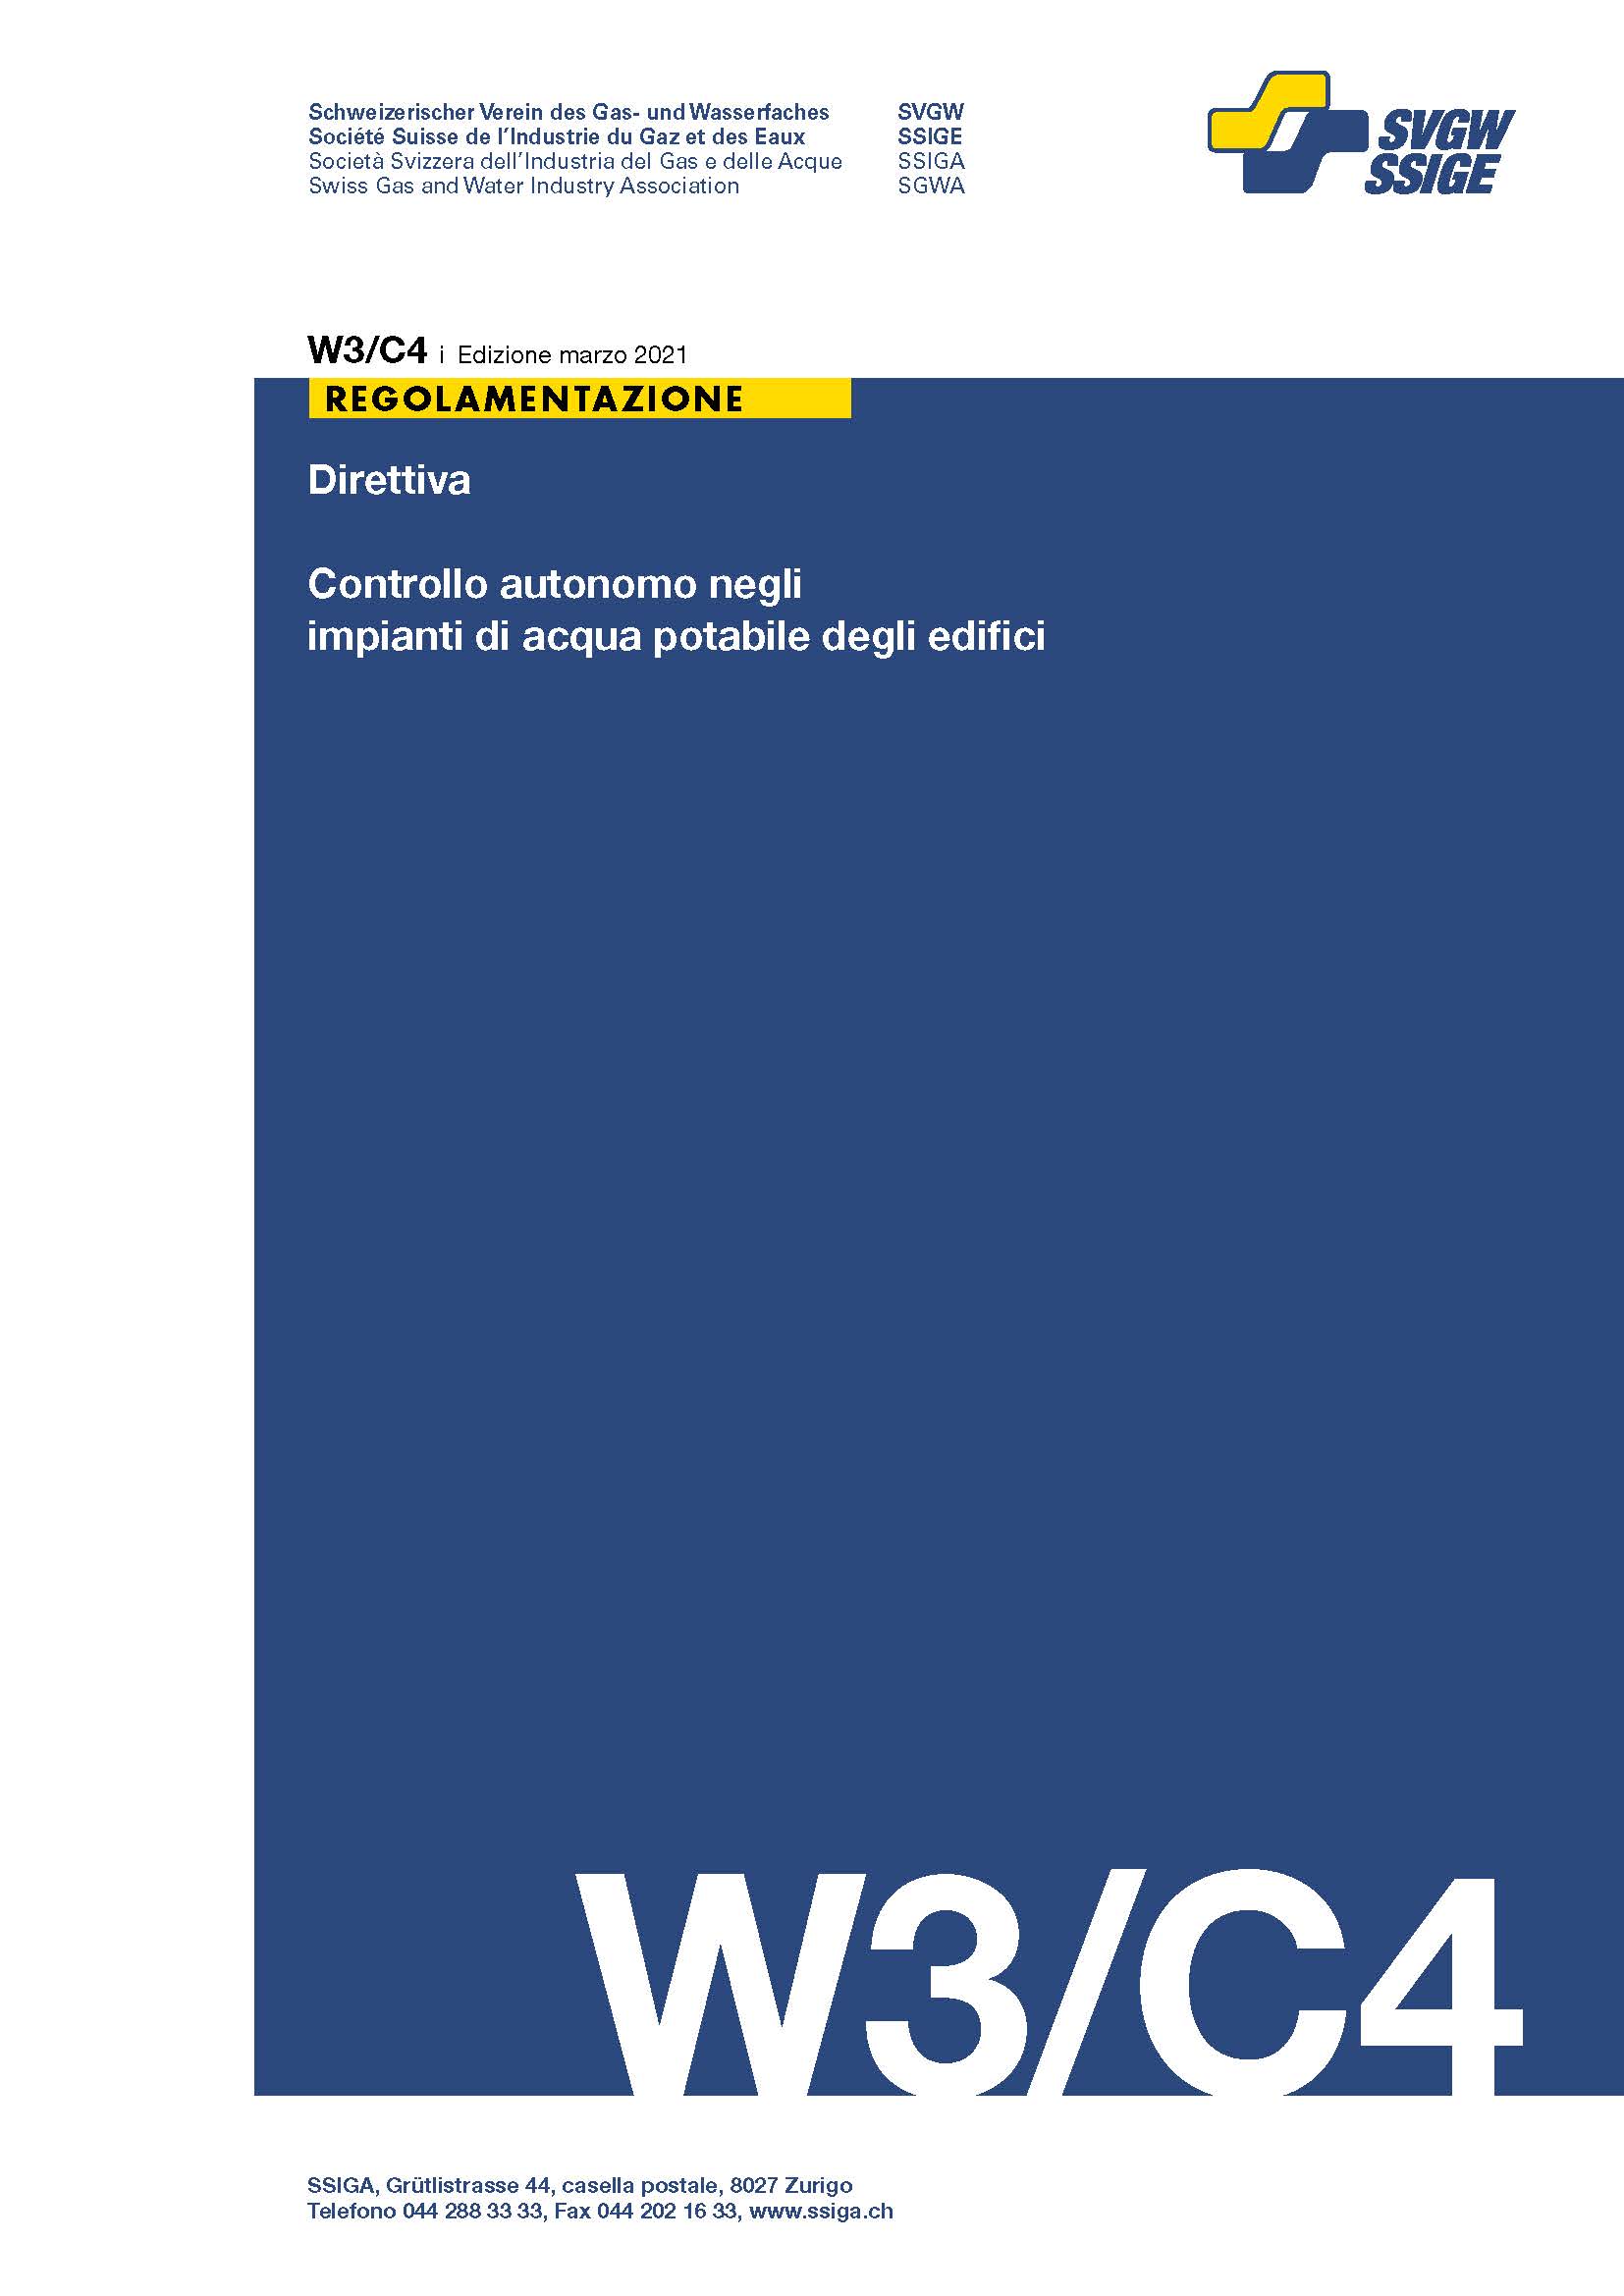 W3/C4 i Direttiva; Controllo autonomo negli impianti di acqua potabile degli edifici (2)